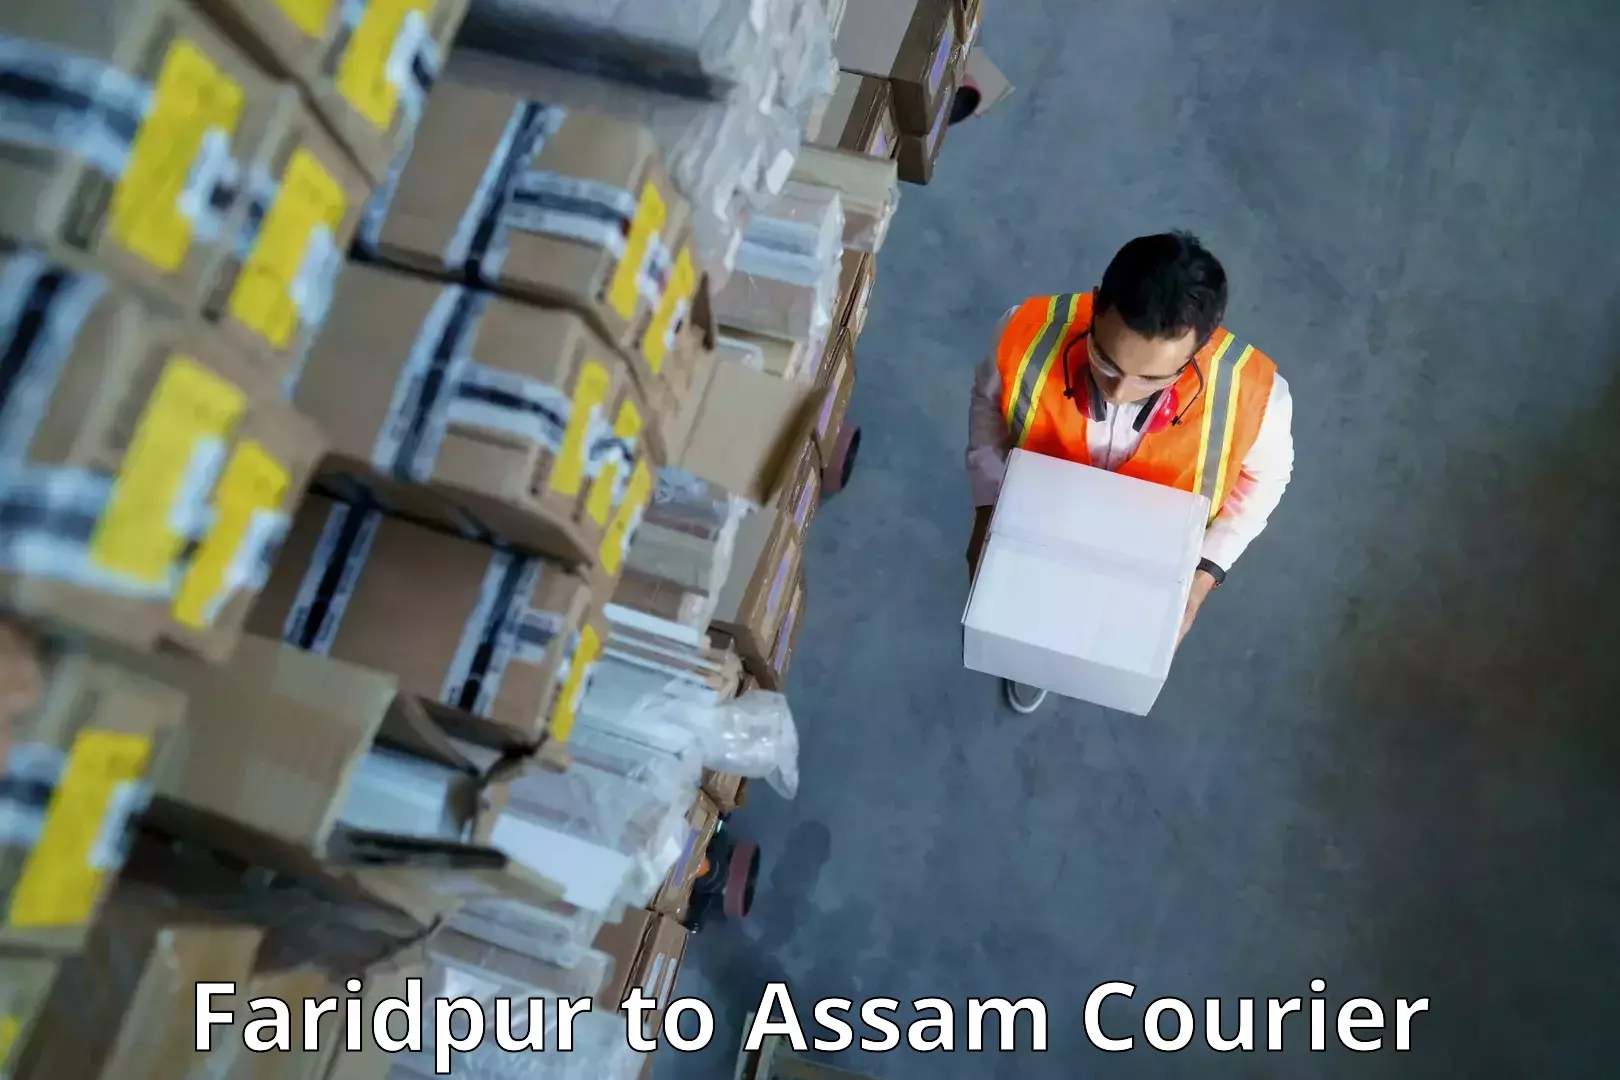 Courier app Faridpur to Haflong